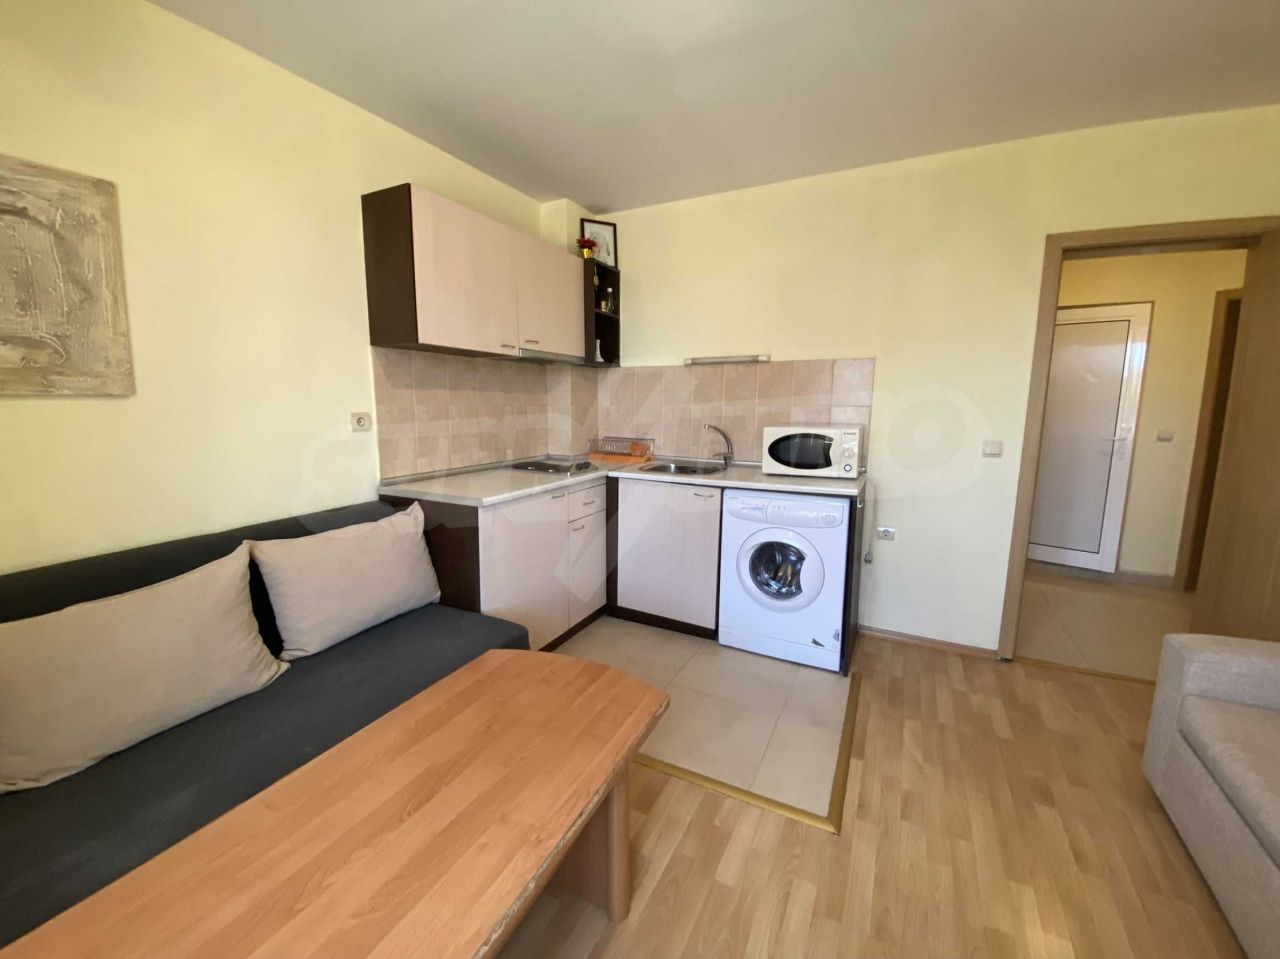 Apartment in Bansko, Bulgaria, 61.5 sq.m - picture 1